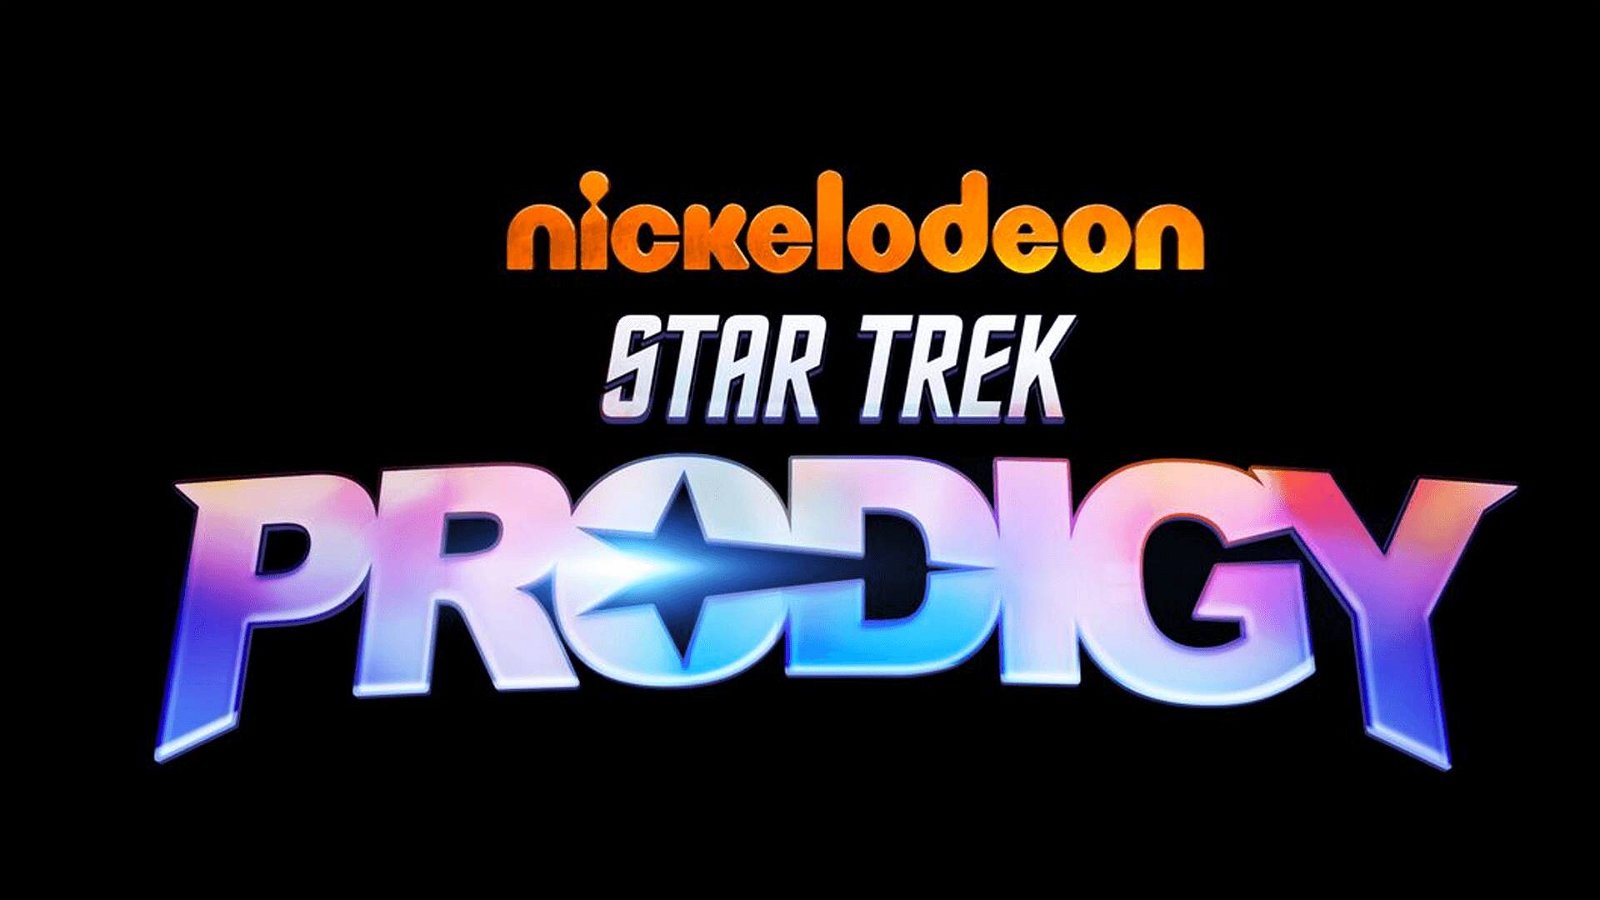 Immagine di Prime immagini e sigla di Star Trek: Prodigy, la nuova serie animata